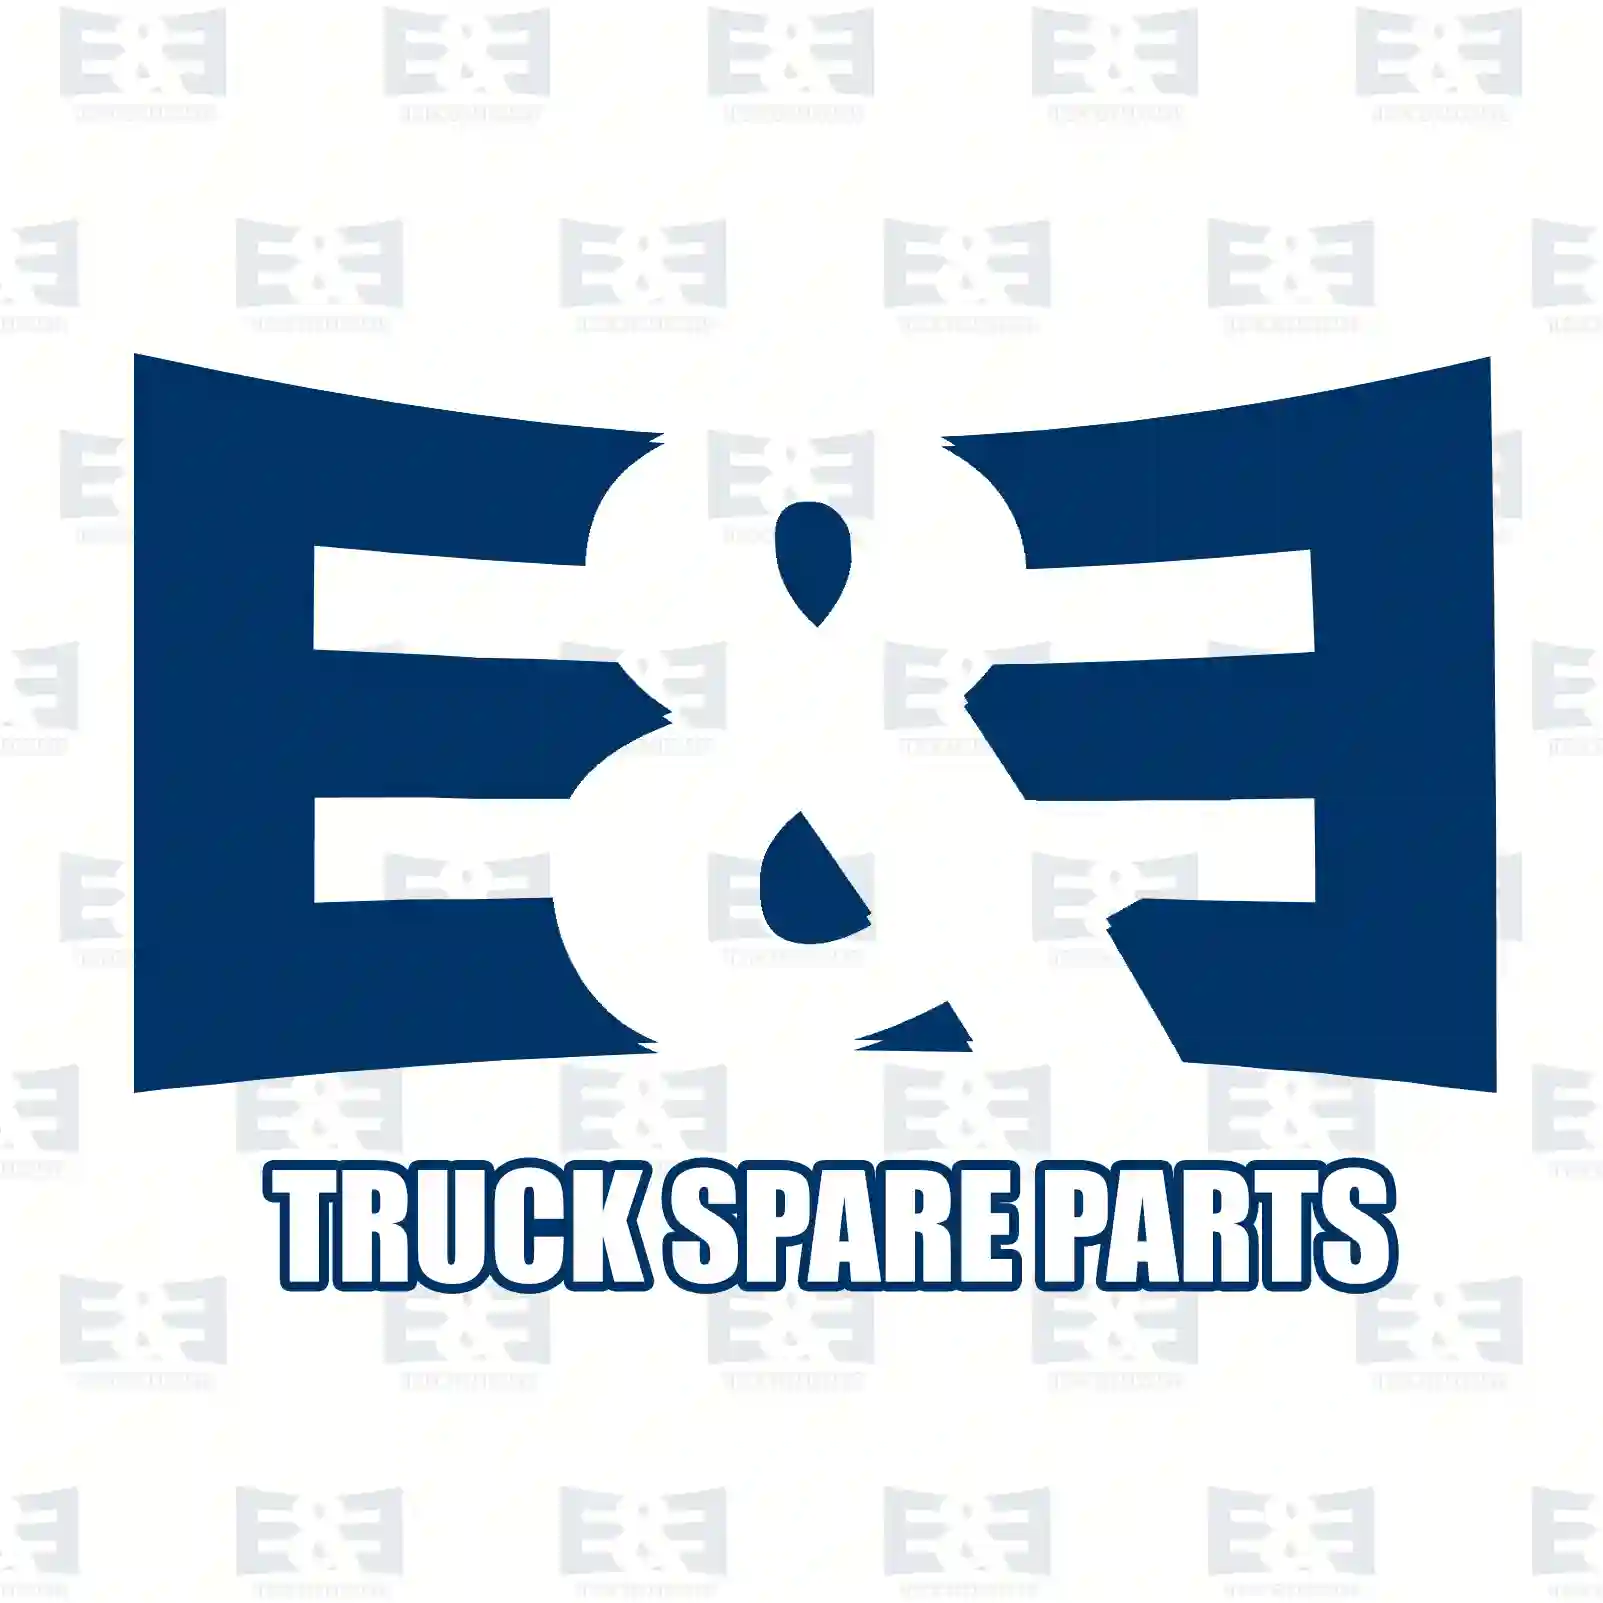 Compressor, 2E2296781, 51540007064 ||  2E2296781 E&E Truck Spare Parts | Truck Spare Parts, Auotomotive Spare Parts Compressor, 2E2296781, 51540007064 ||  2E2296781 E&E Truck Spare Parts | Truck Spare Parts, Auotomotive Spare Parts